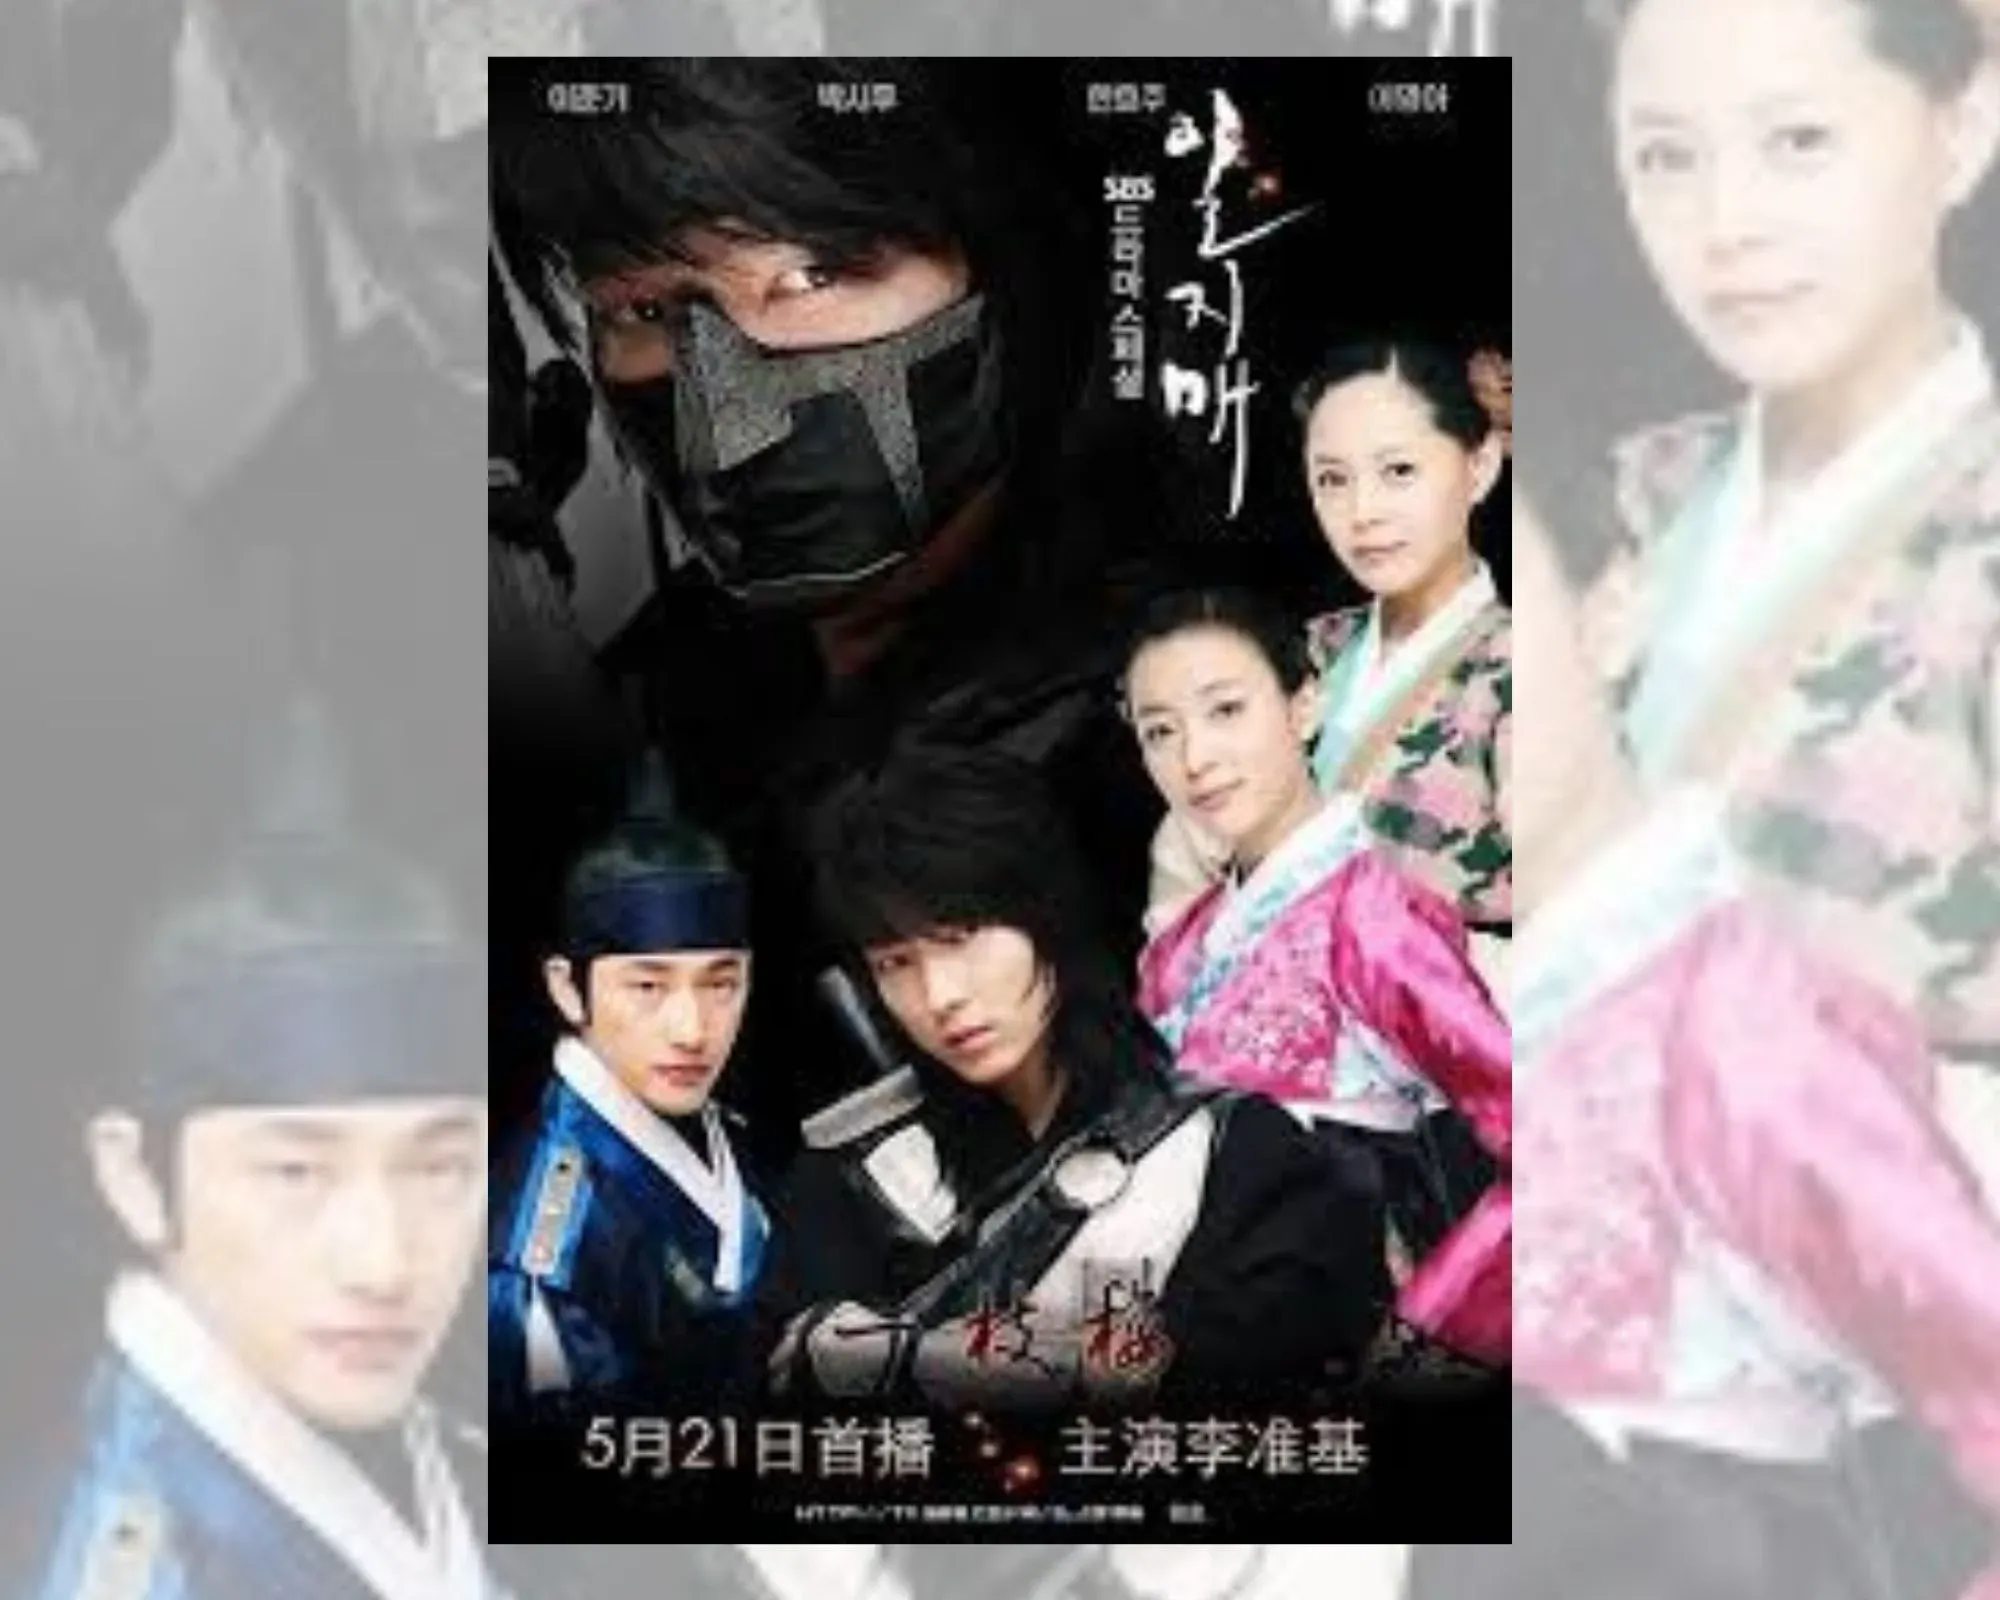 Постер на корейската драма “Илджиме”, на който се виждат всички главни актьори, включително и И Джун-ги.